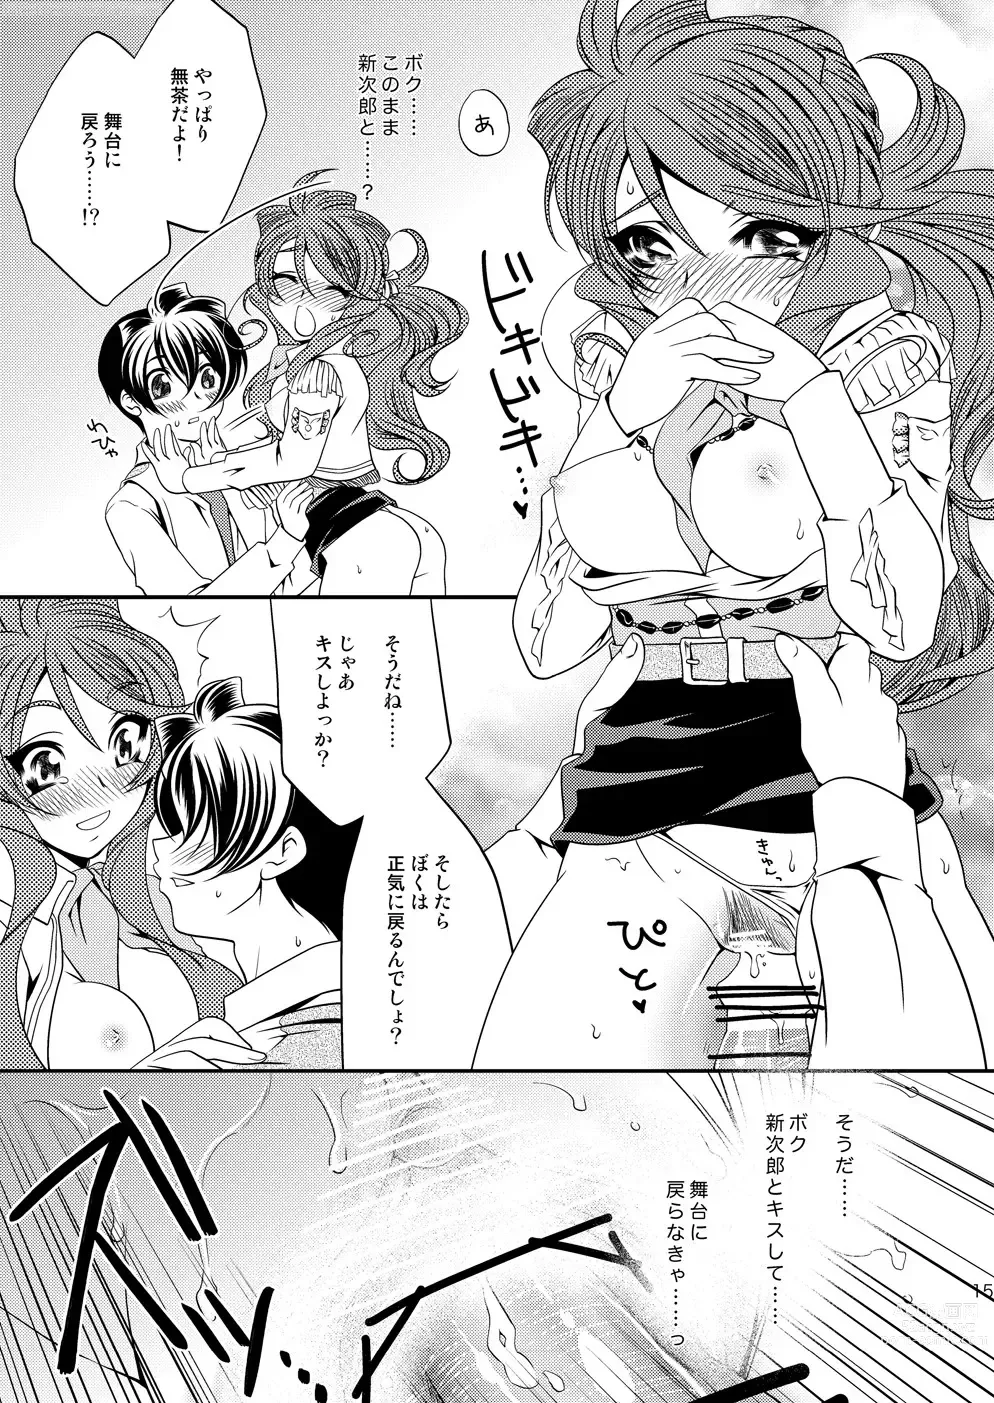 Page 14 of doujinshi Maru Maru Mori Mori na Okusuri no Sei de Gemini-san ga Kiss o Nedaru